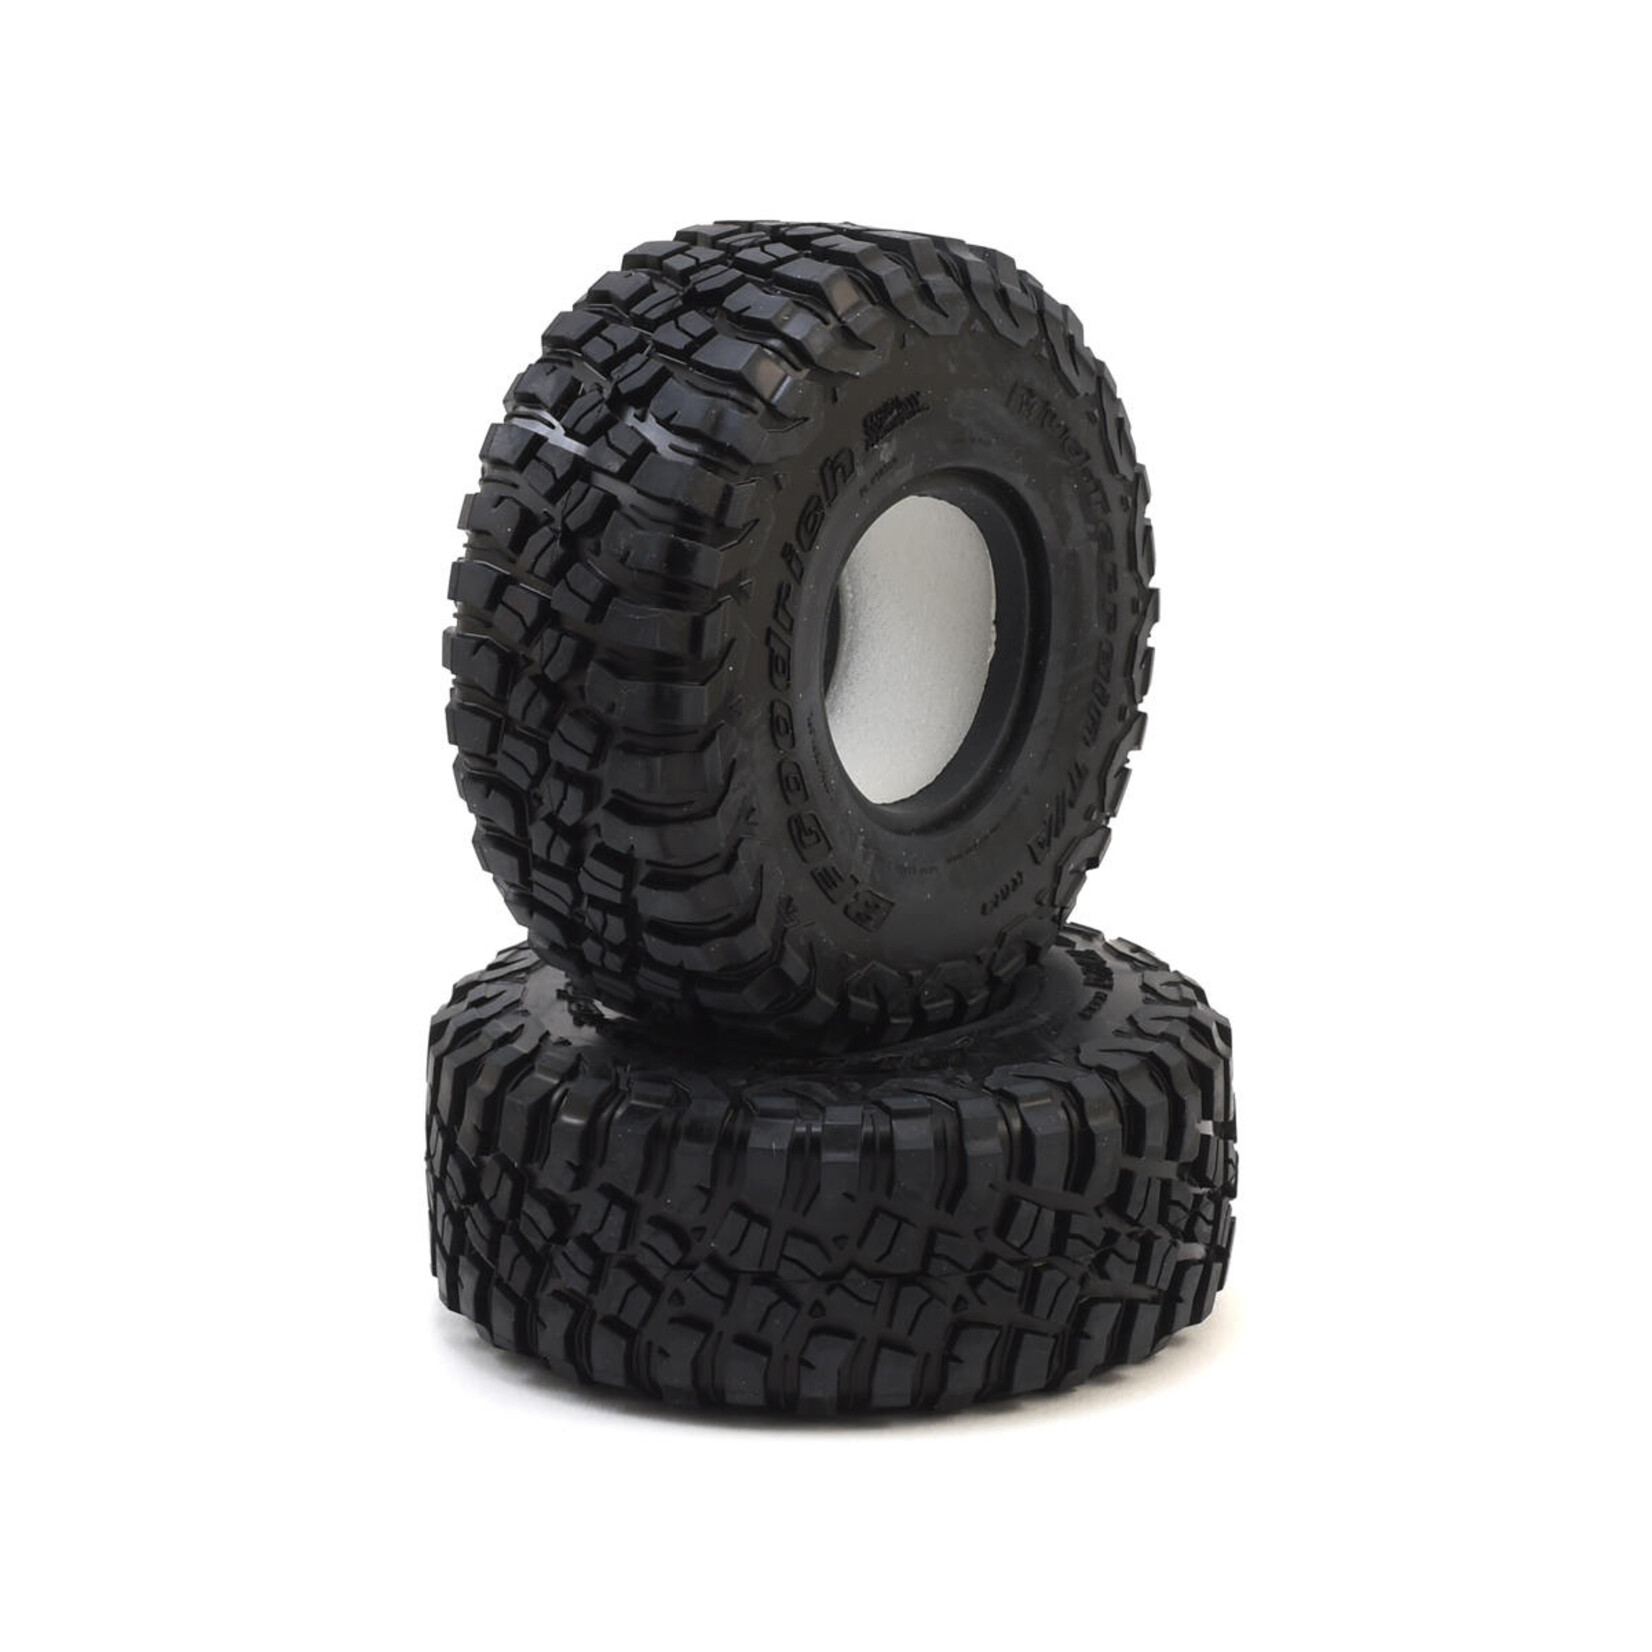 Pro-Line Pro-Line BFGoodrich Mud-Terrain T/A KM3 1.9" Rock Crawler Tires (G8) w/Memory Foam (2) #10150-14